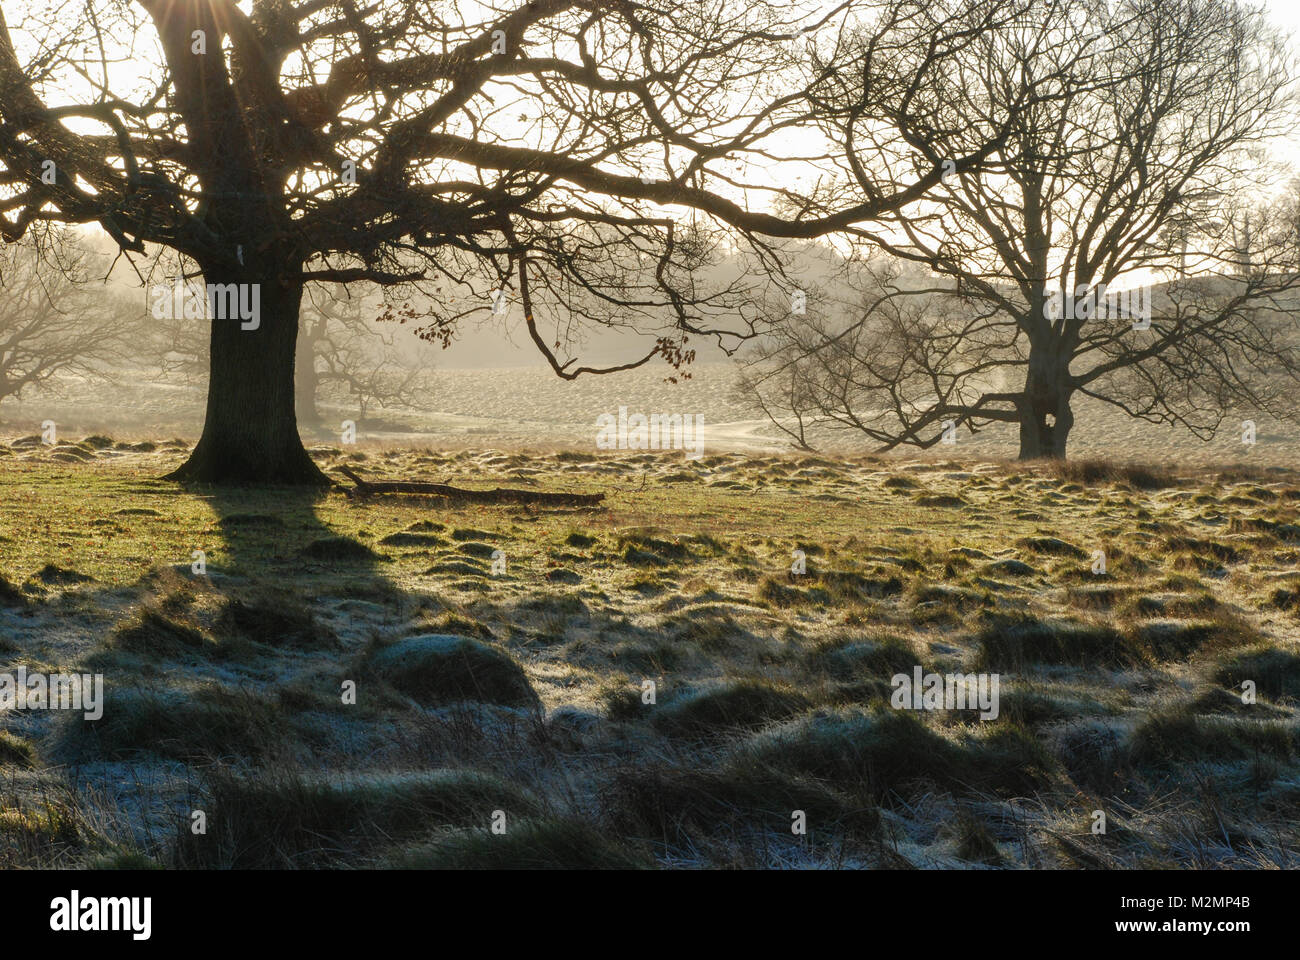 La mattina presto il paesaggio a Petworth Park nel West Sussex, Regno Unito. Una bella e soleggiata ma gelida giornata invernale nella campagna inglese. Foto Stock